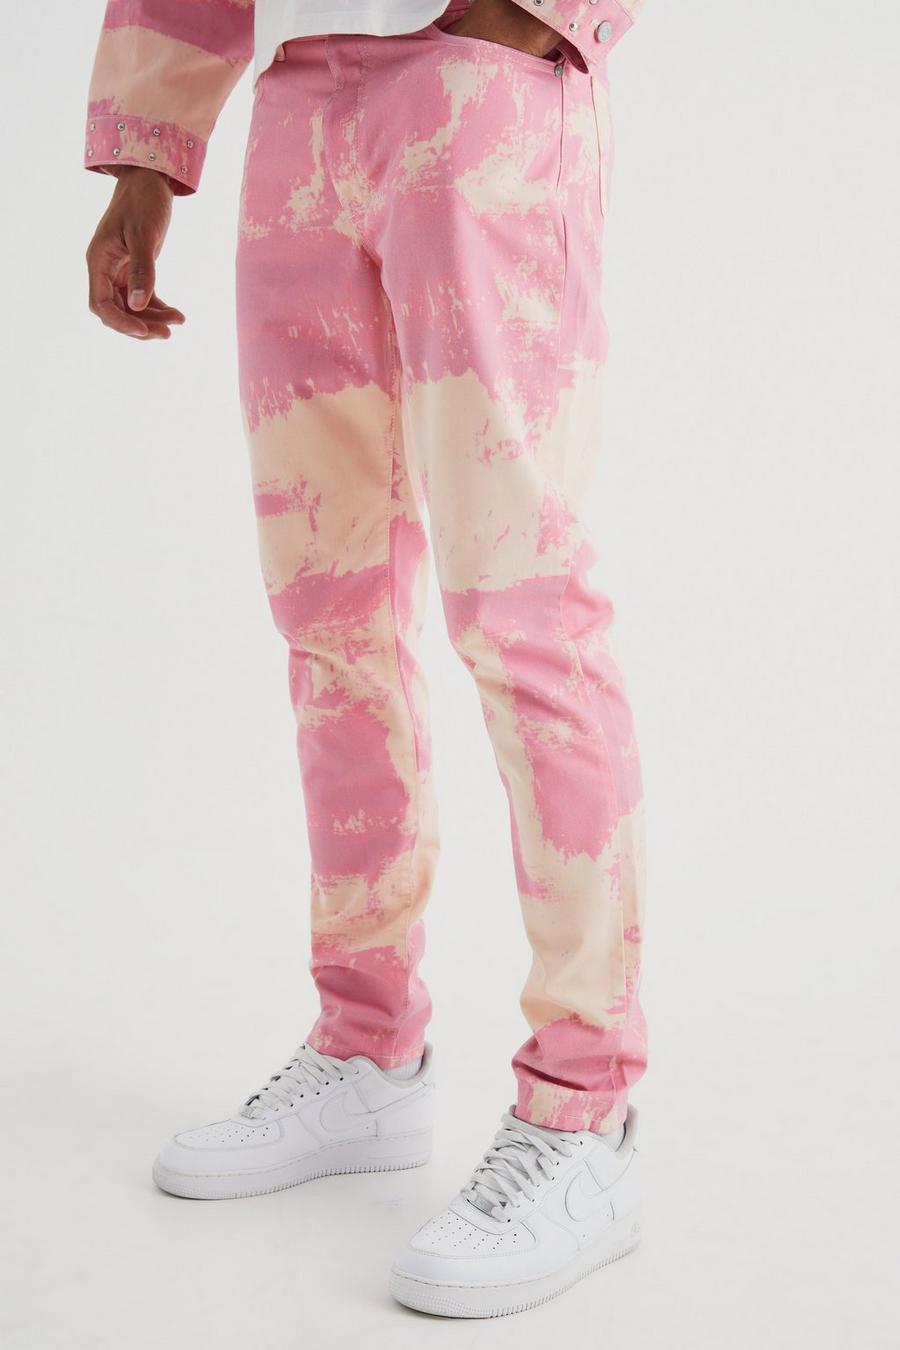 Jeans Tall Slim Fit in denim rigido candeggiati con inserti, Pink image number 1